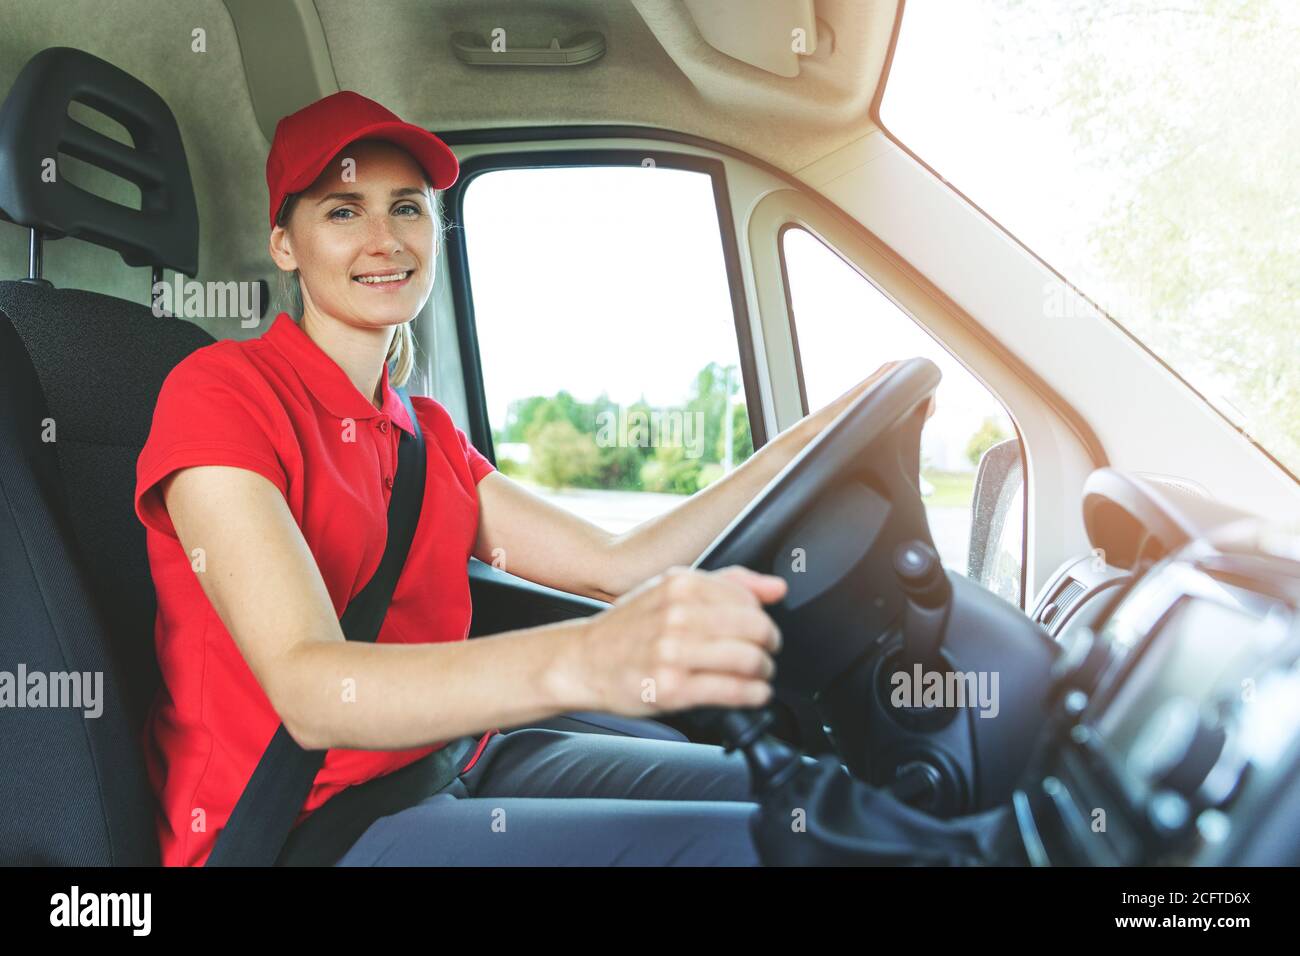 servizi di trasporto - giovane autista donna in uniforme rossa che guida un furgone. sorridendo alla macchina fotografica Foto Stock